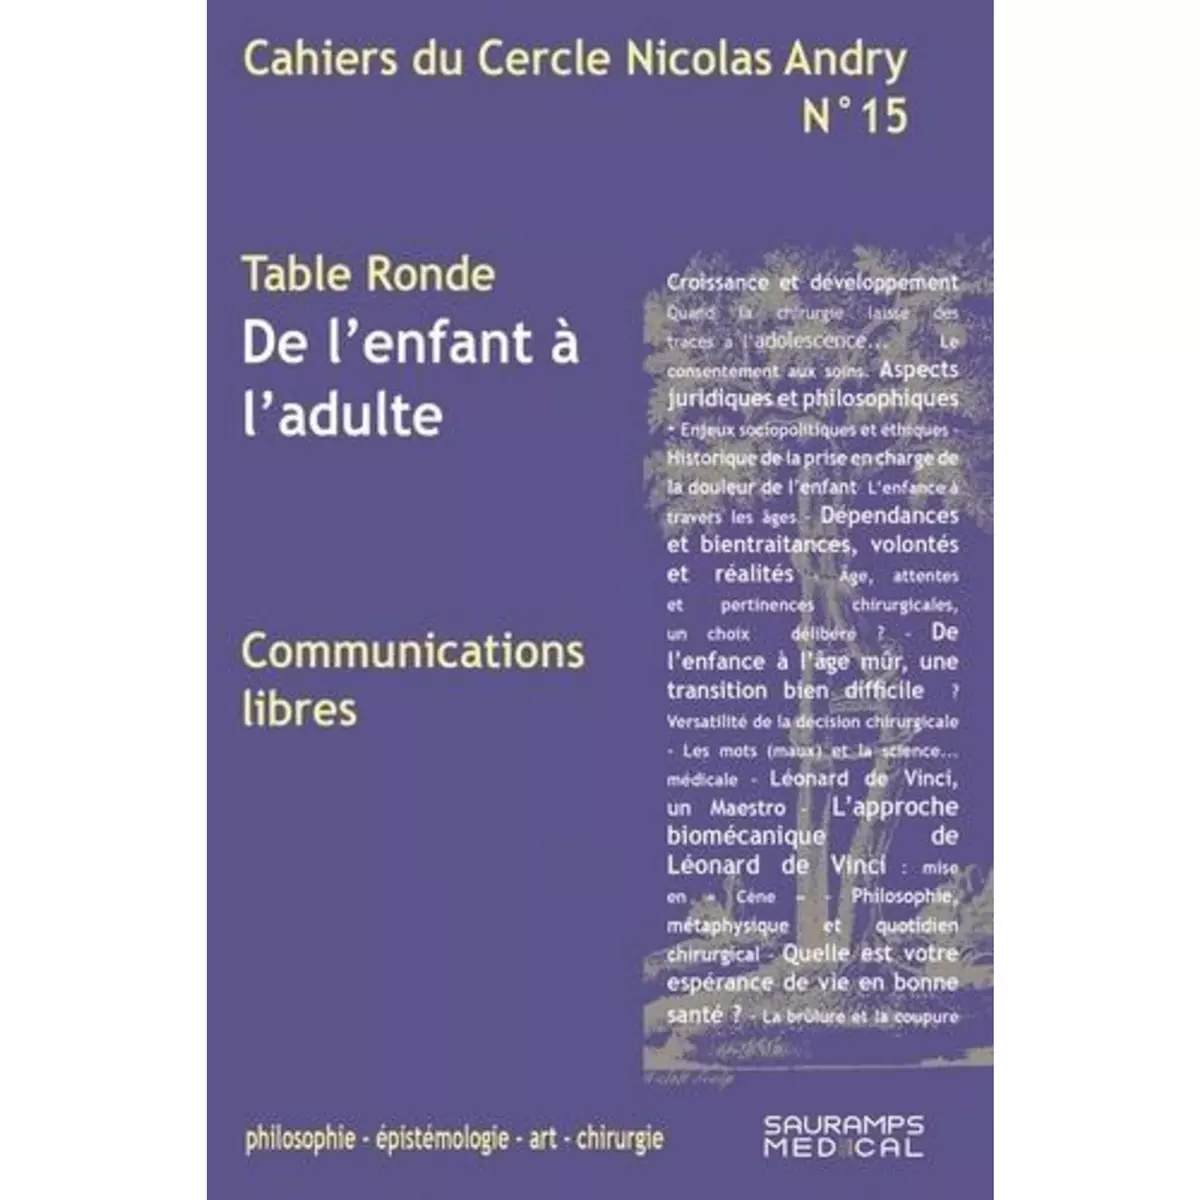  CAHIERS DU CERCLE NICOLAS ANDRY N° 15 : DE L'ENFANT A L'ADULTE, Masquelet Alain-Charles